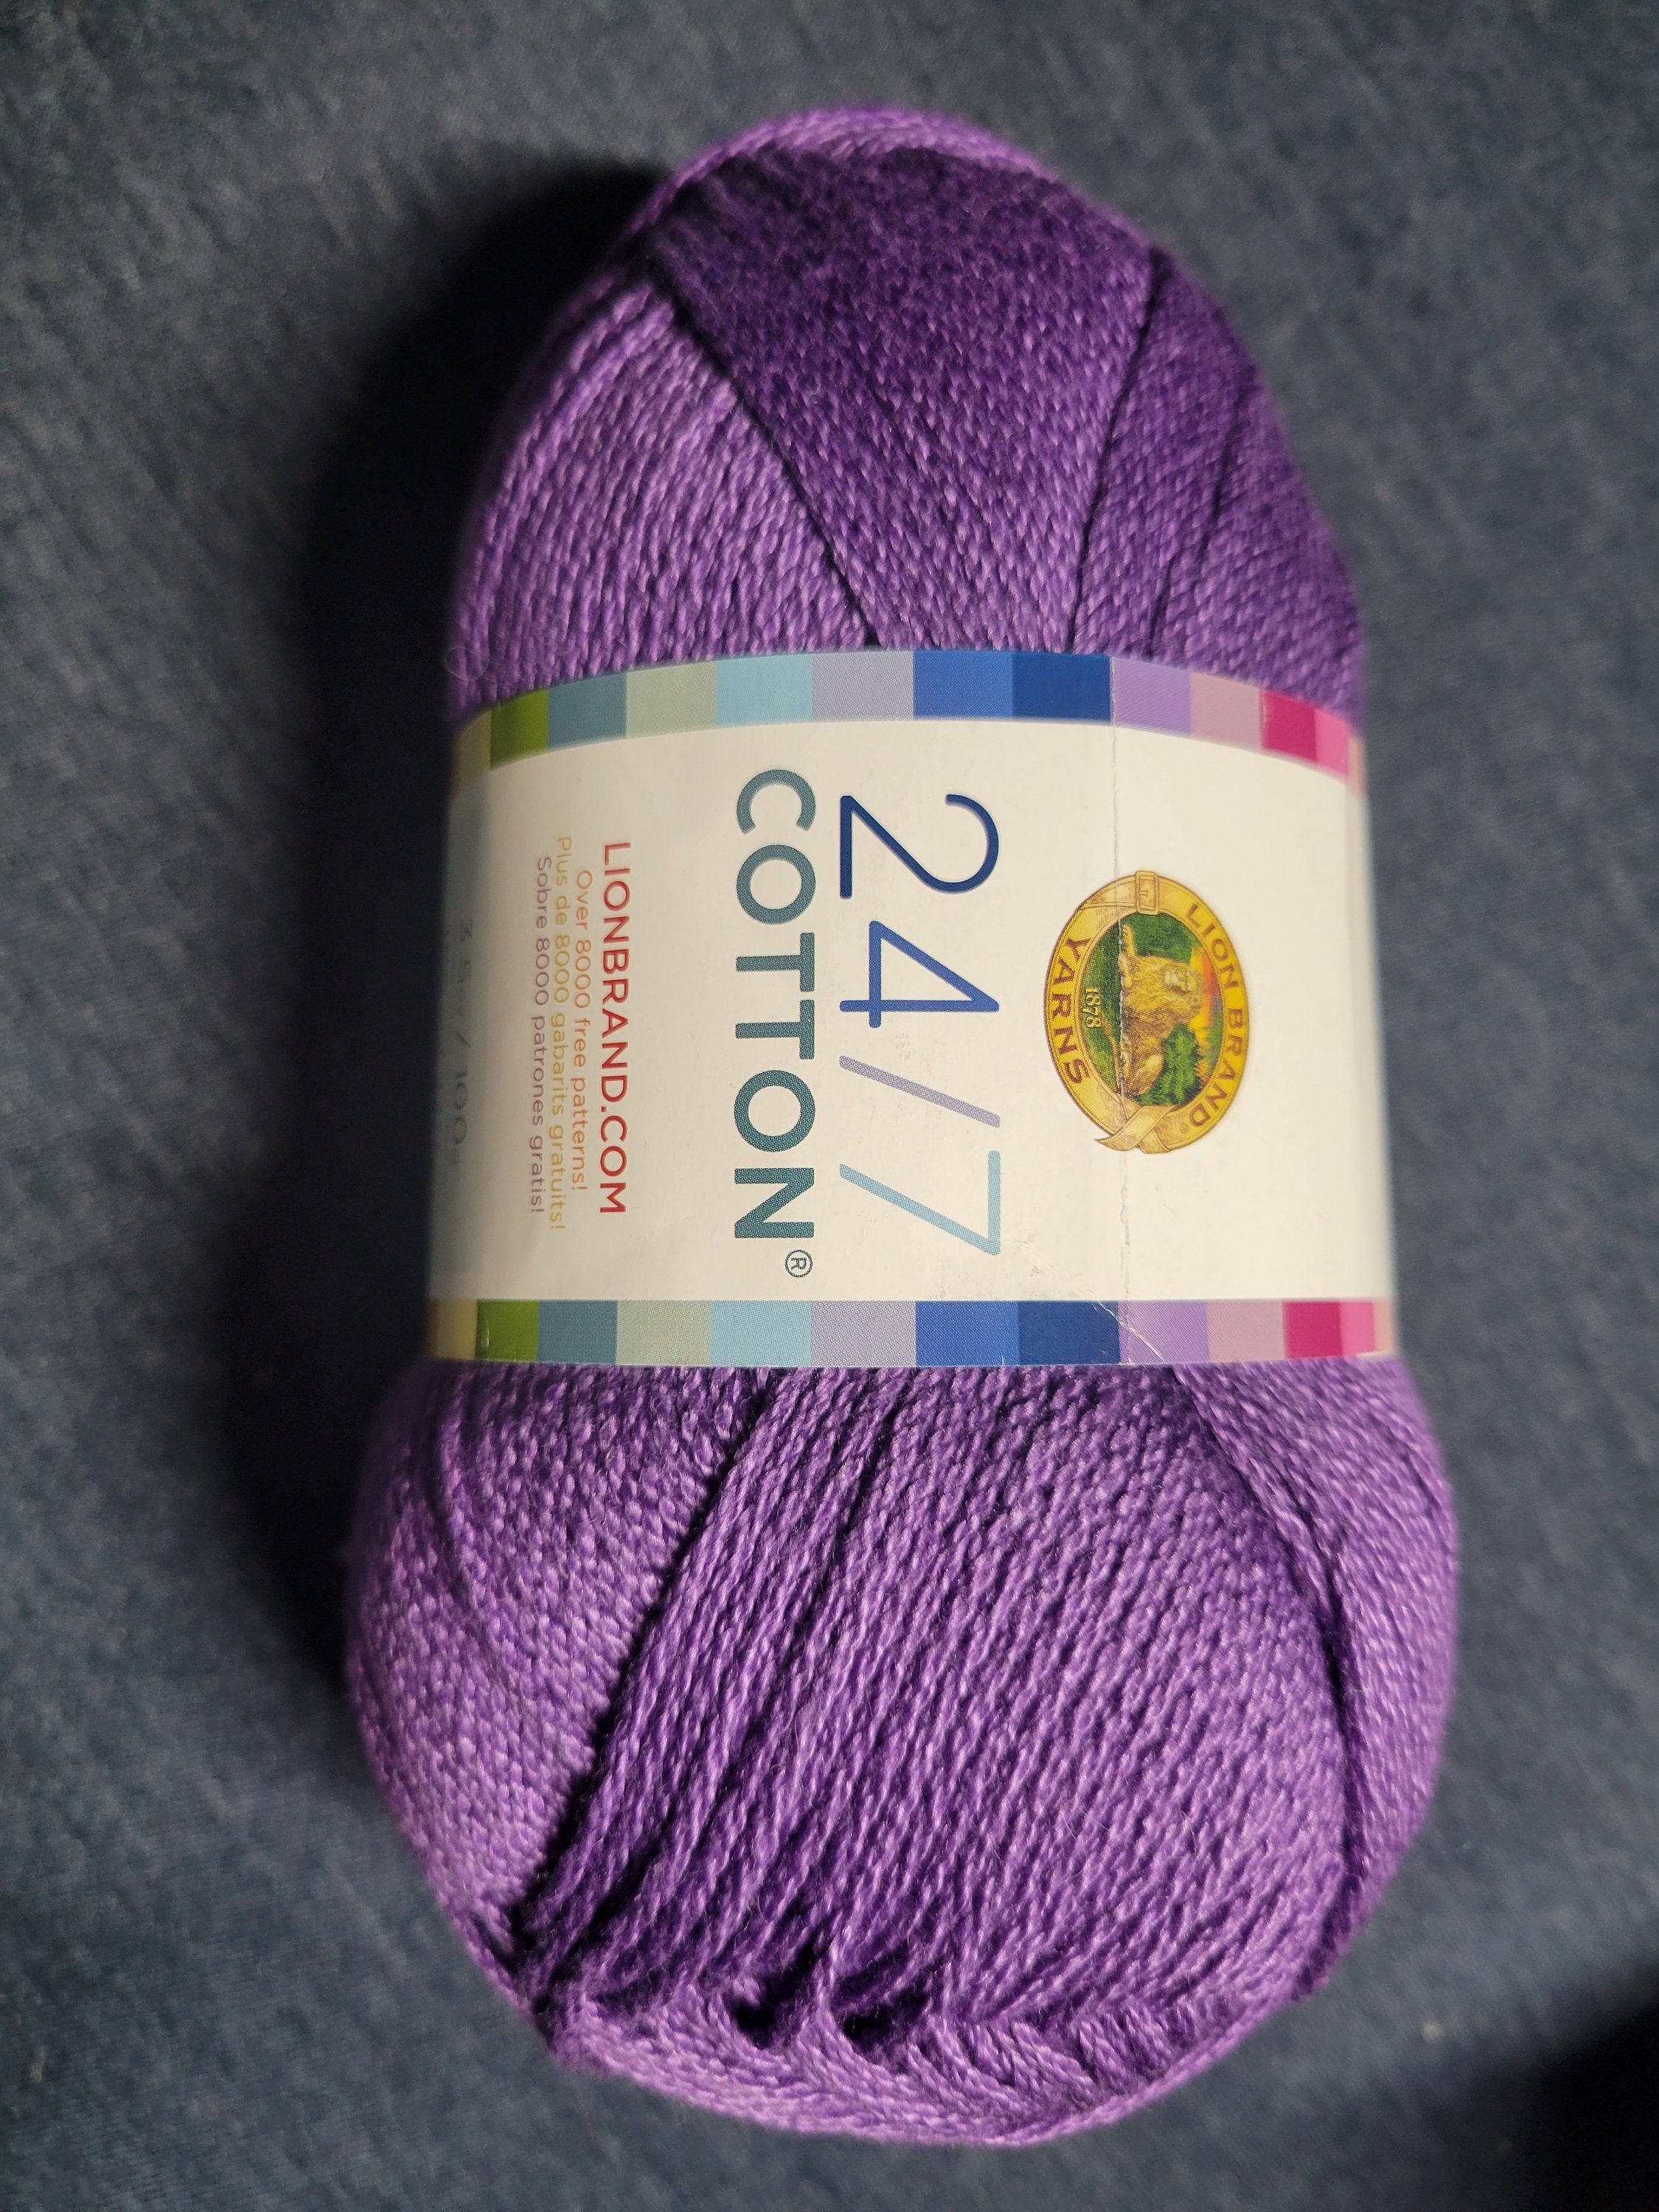 Lion Brand Yarn - 24/7 Cotton - 6 Skein Assortment (Mix 17